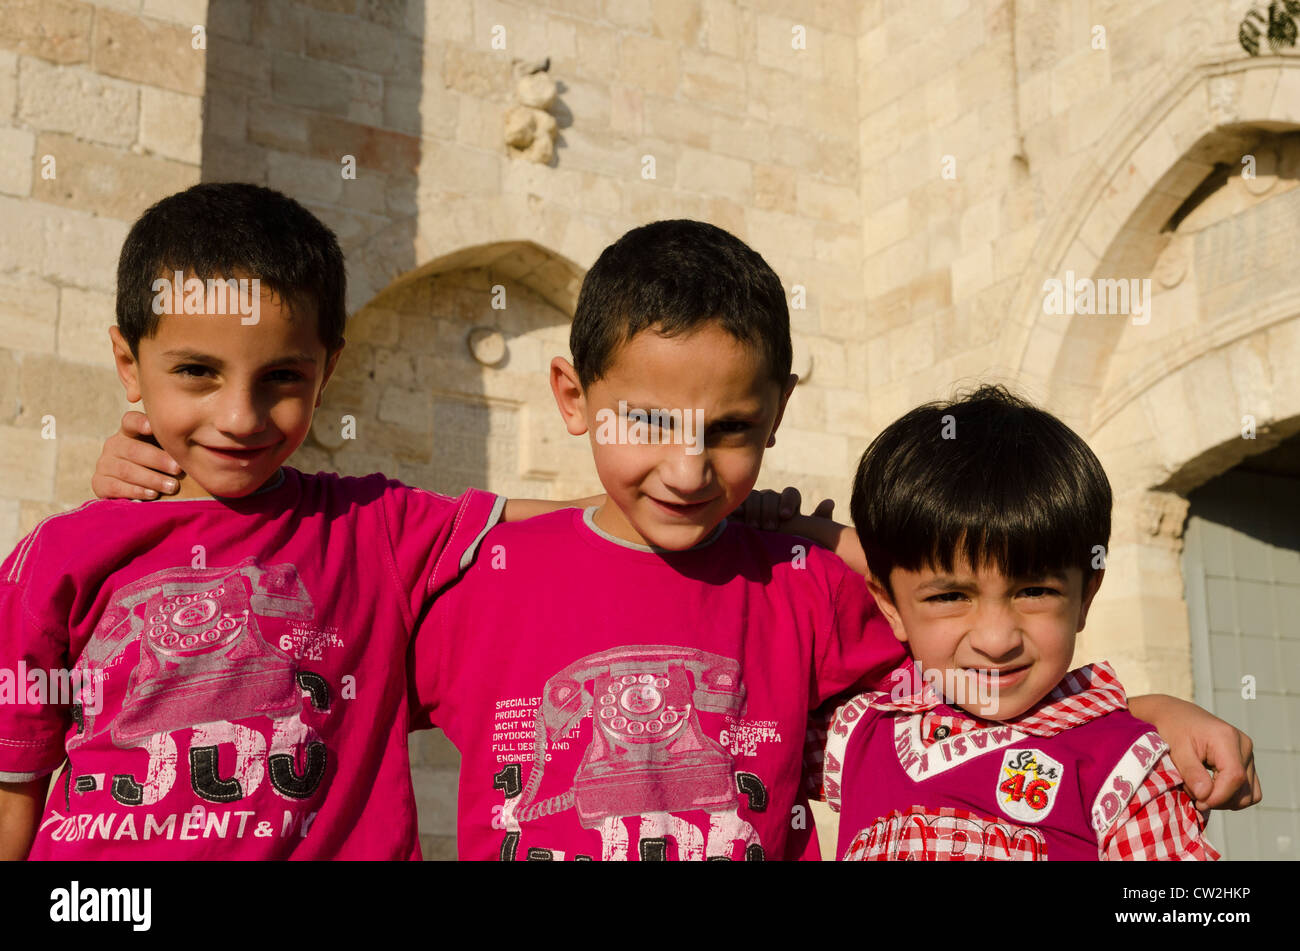 Ritratto di 3 giovani ragazzi palestinesi a Jaffa gate. Gerusalemme vecchia città. Israele Foto Stock